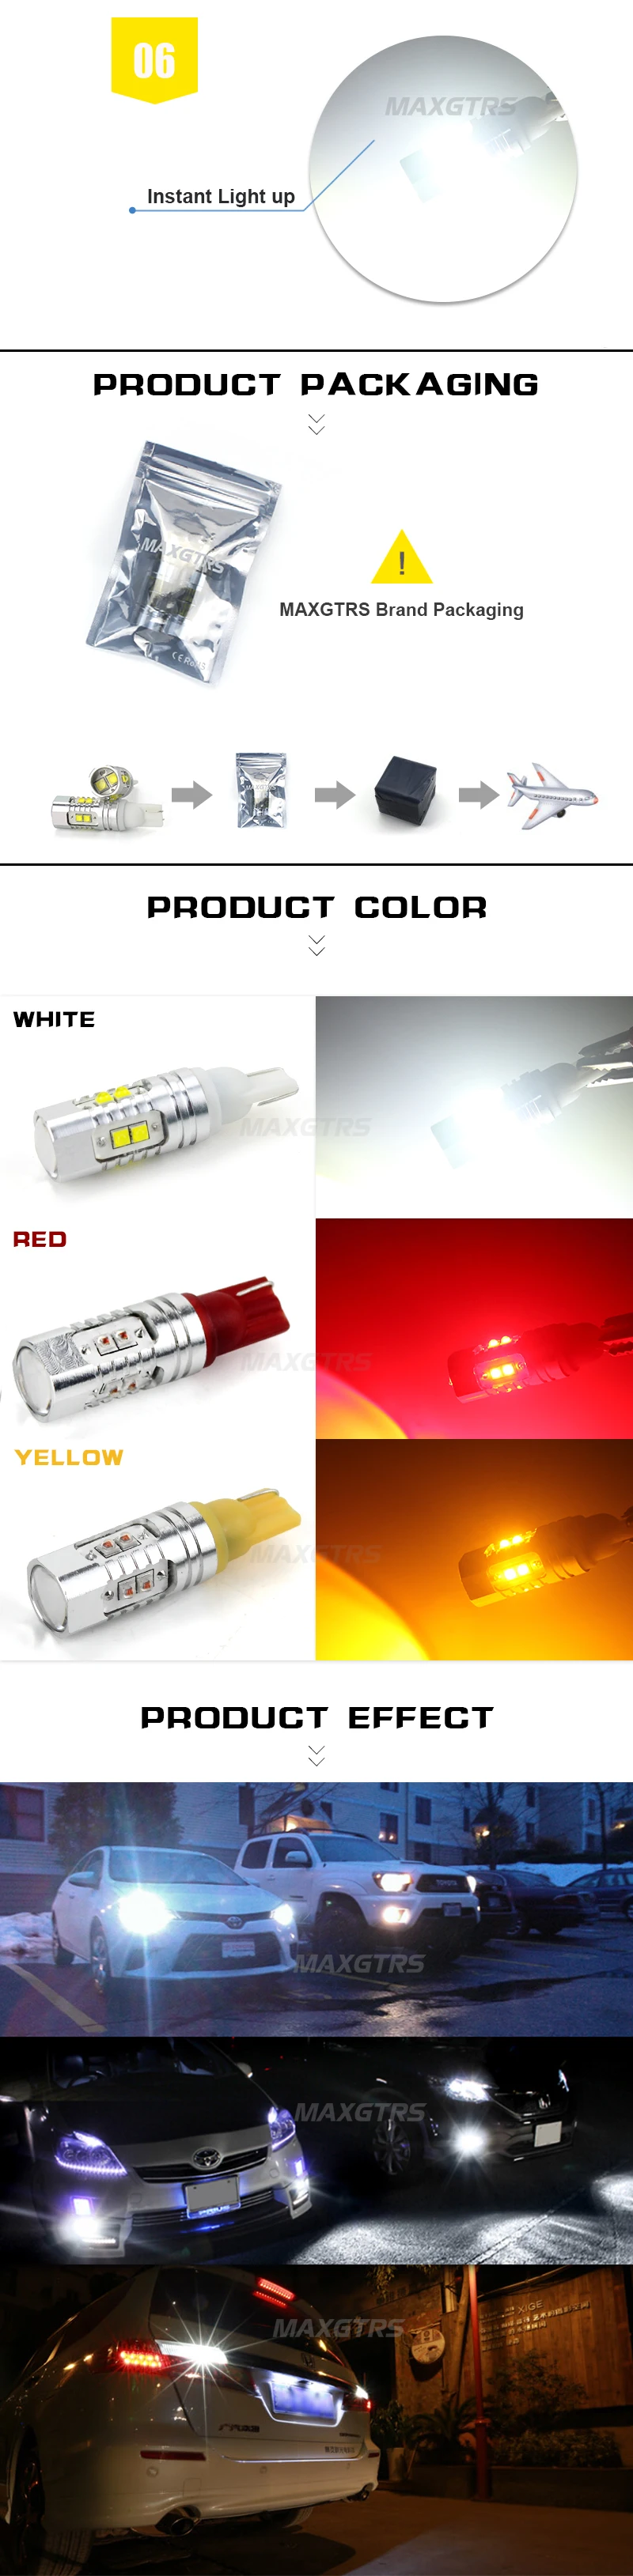 2x T10 194 W5W CREE чип Led белый/желтый 25 Вт 50 Вт с Линь проектор алюминиевый корпус лампы DRL Автомобильный интерьер обратный источник света